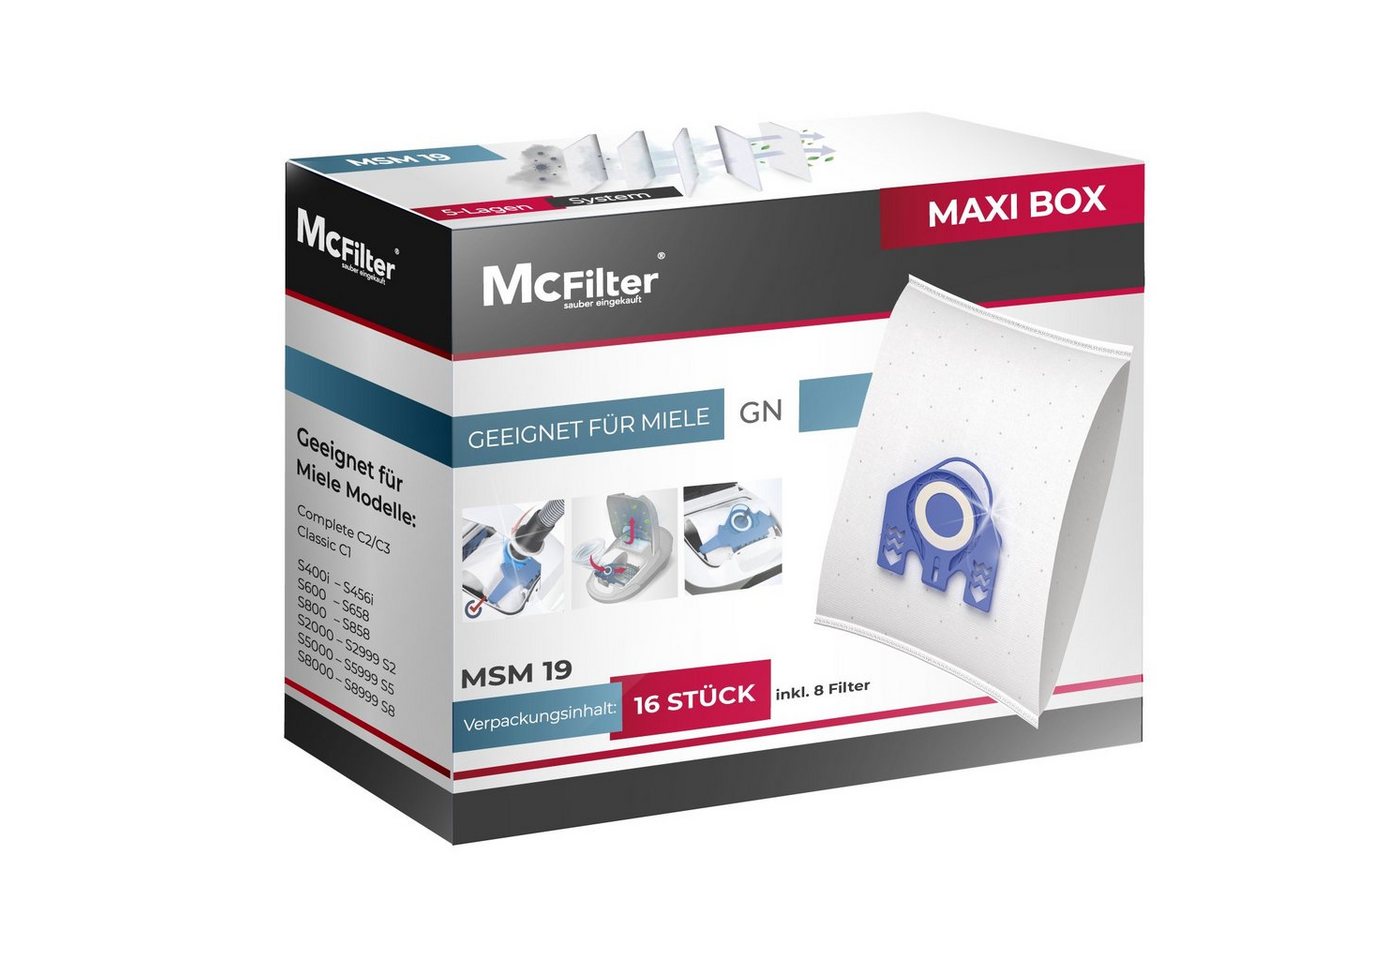 McFilter Staubsaugerbeutel >MAXI BOX< (16+8), passend für Miele Classic C1 Ecoline Serie Staubsauger, inkl. 8 Filter, 16 St., Top Alternative zu 9917730, wie Miele 10408410 von McFilter